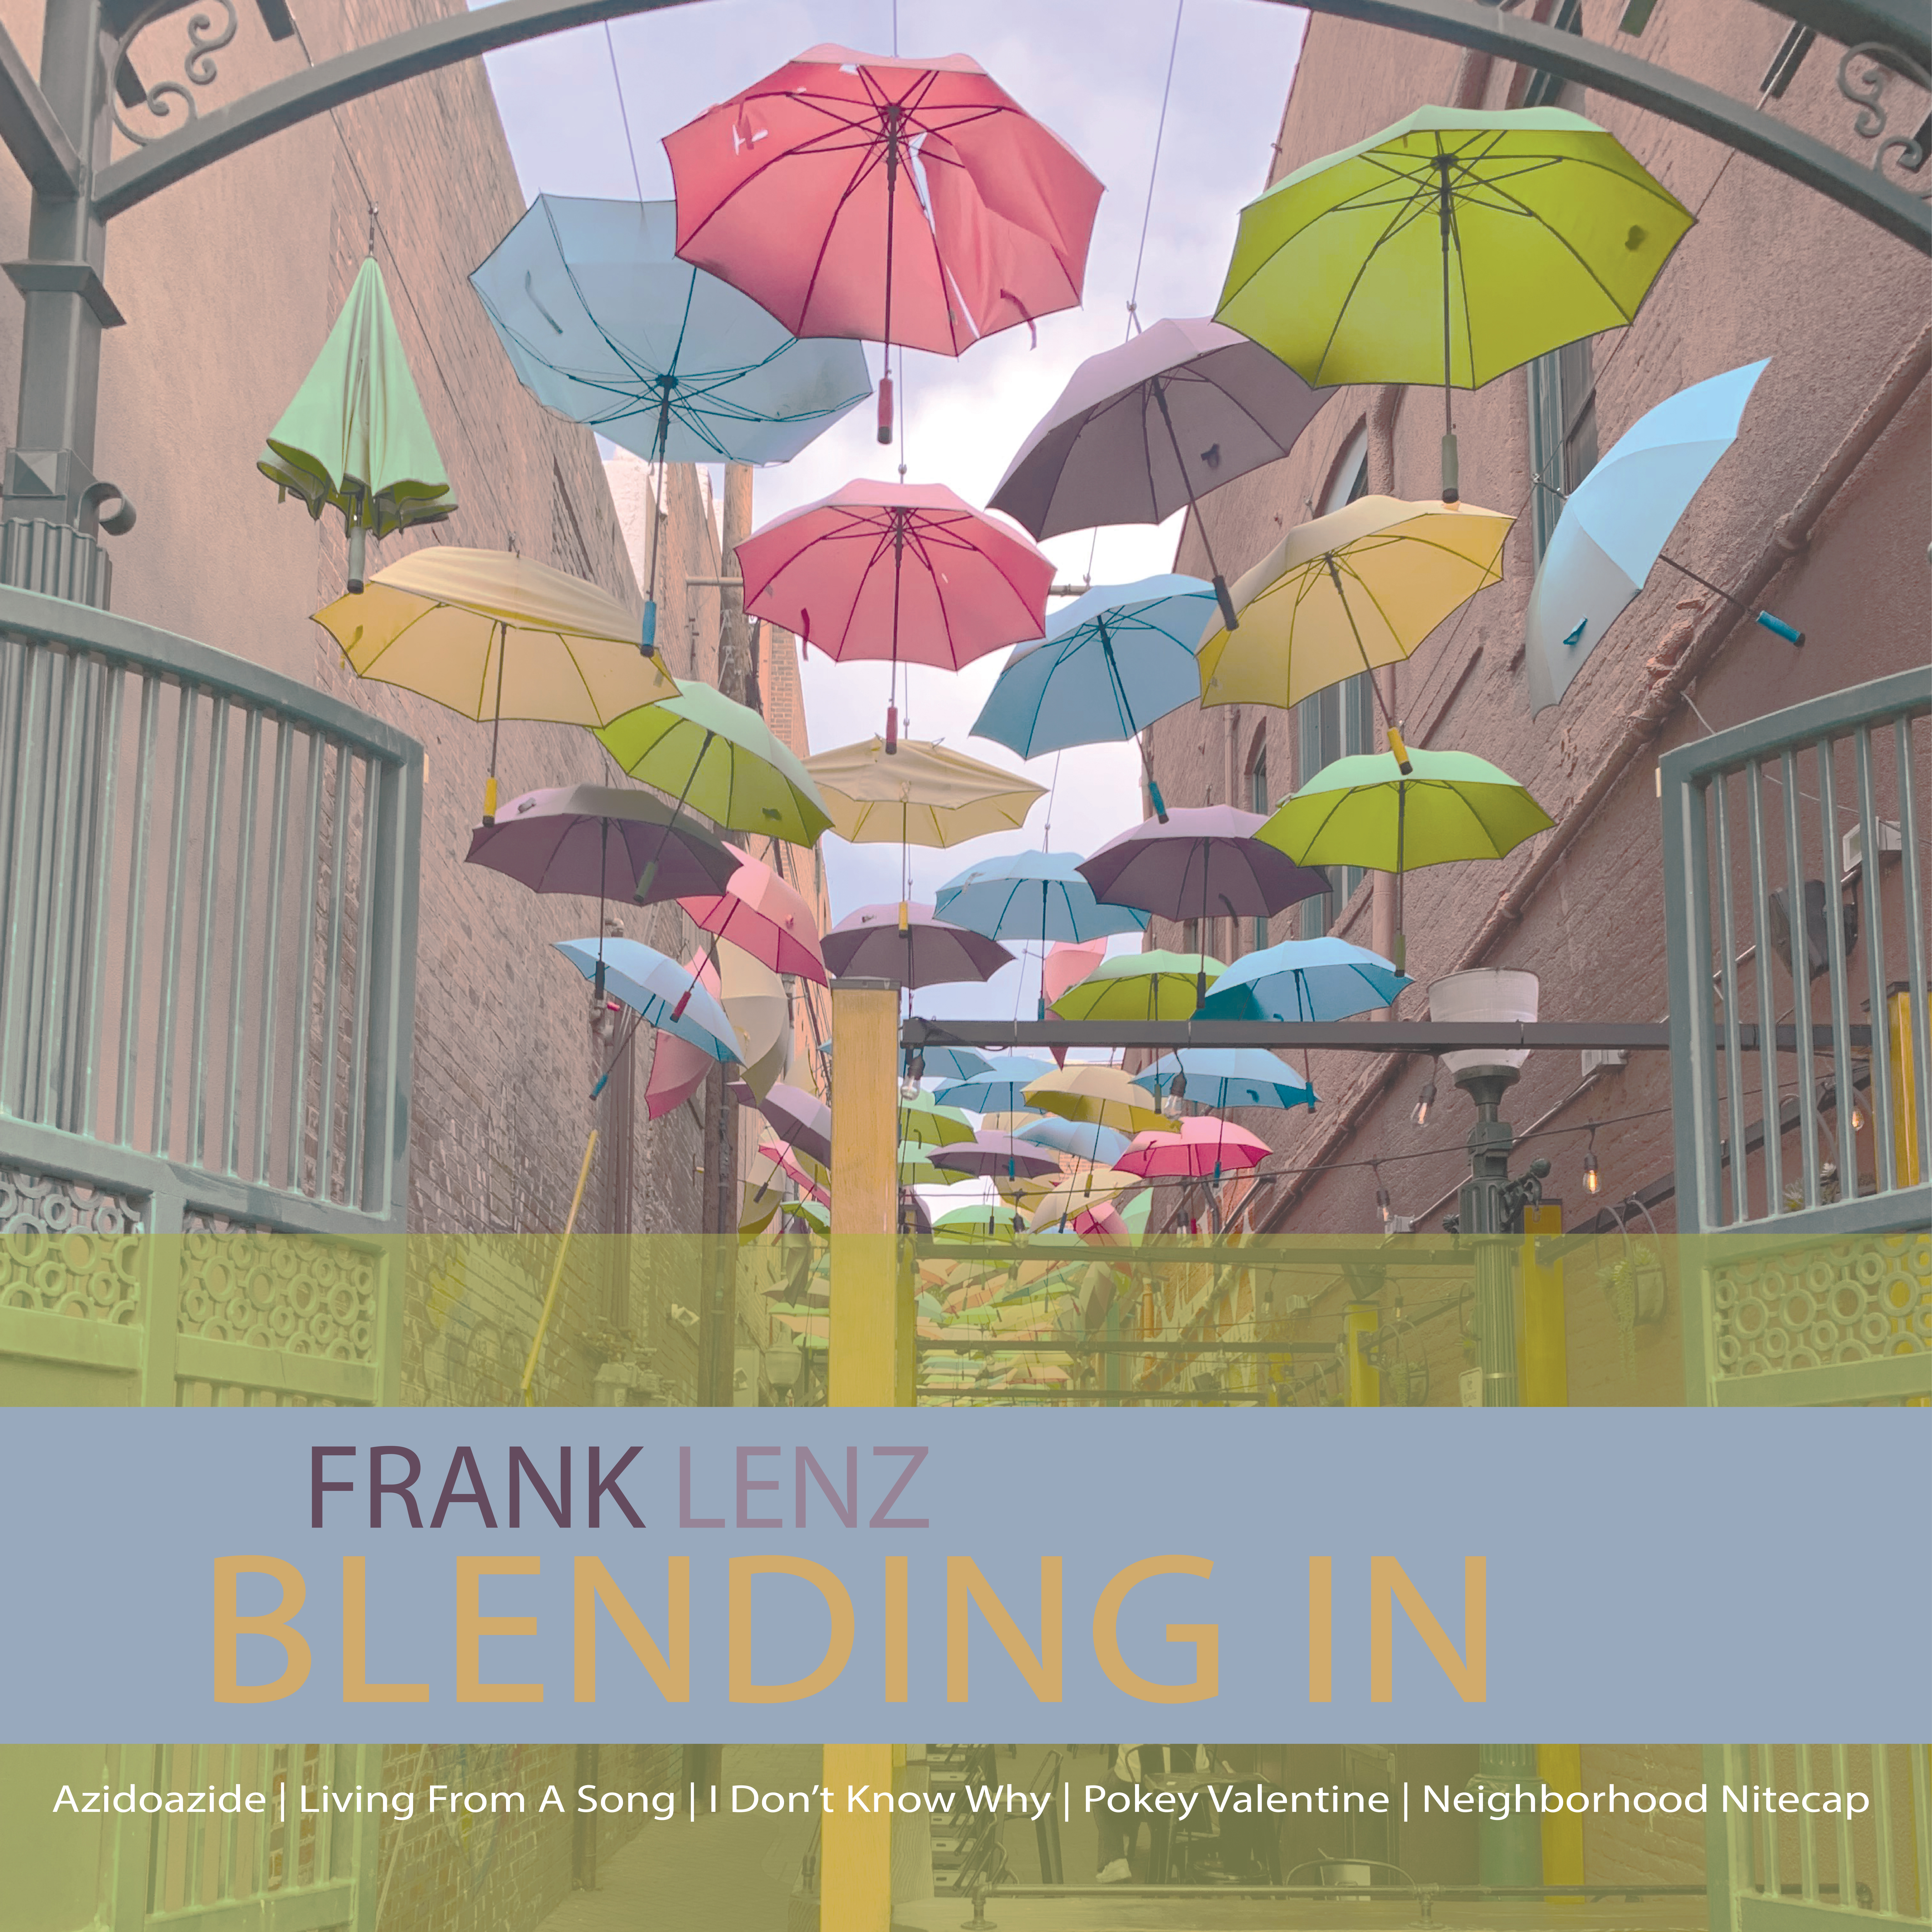 Frank Lenz 'Blending In'